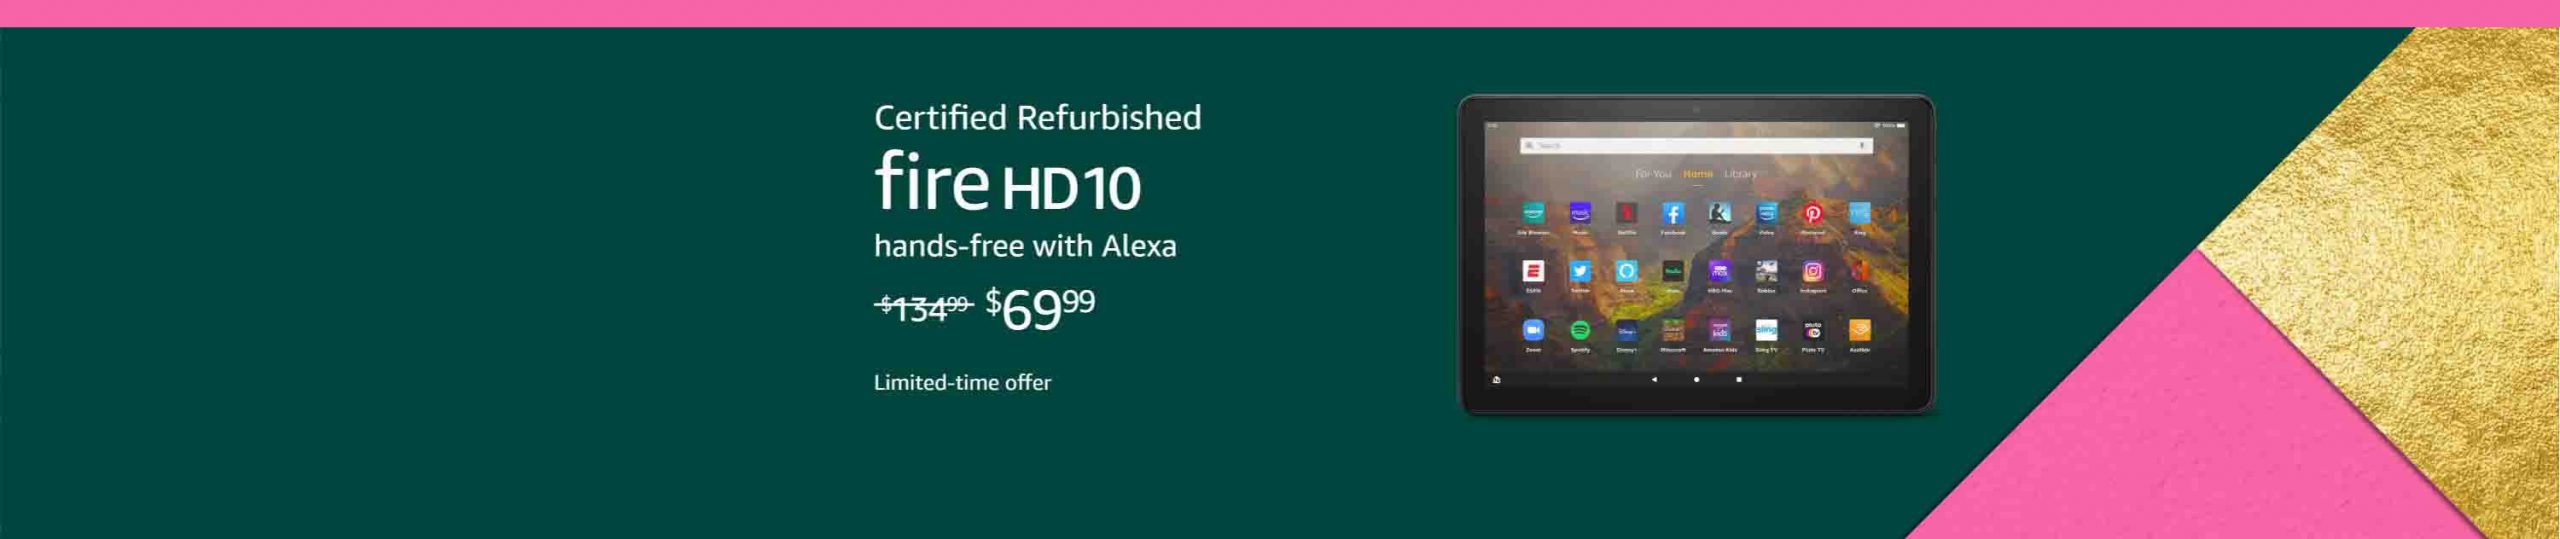 Fire HD 10 tablet